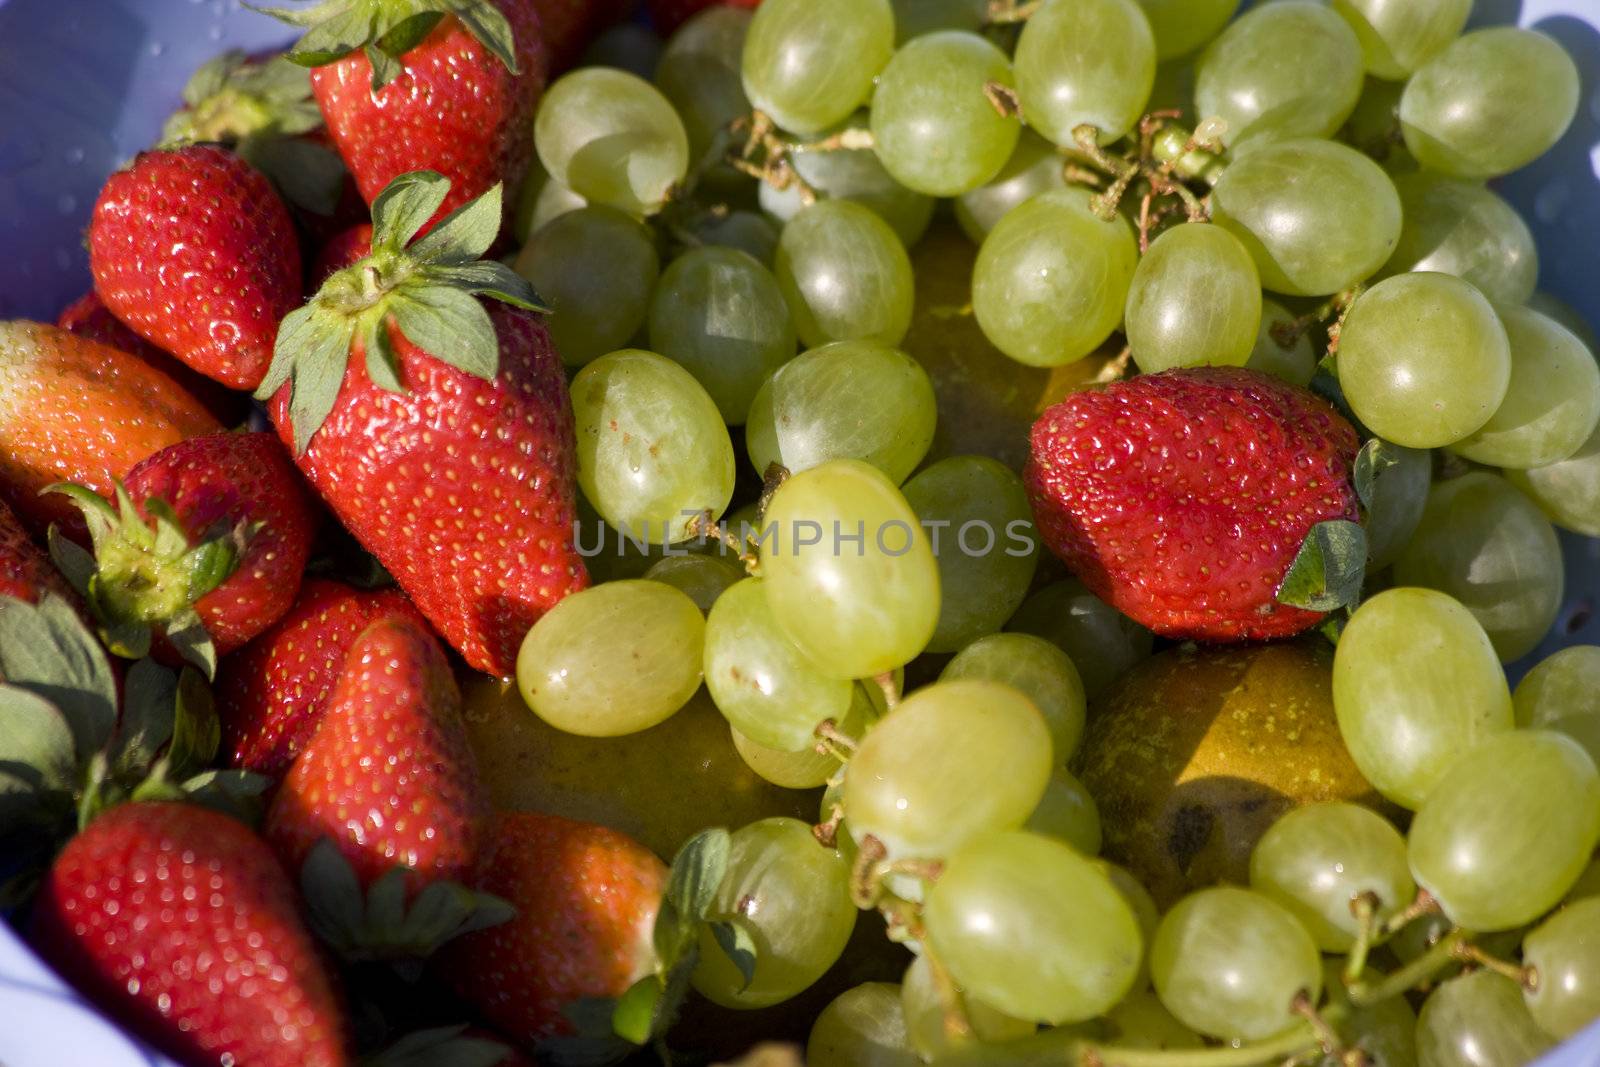 an assortment of mixed fruits